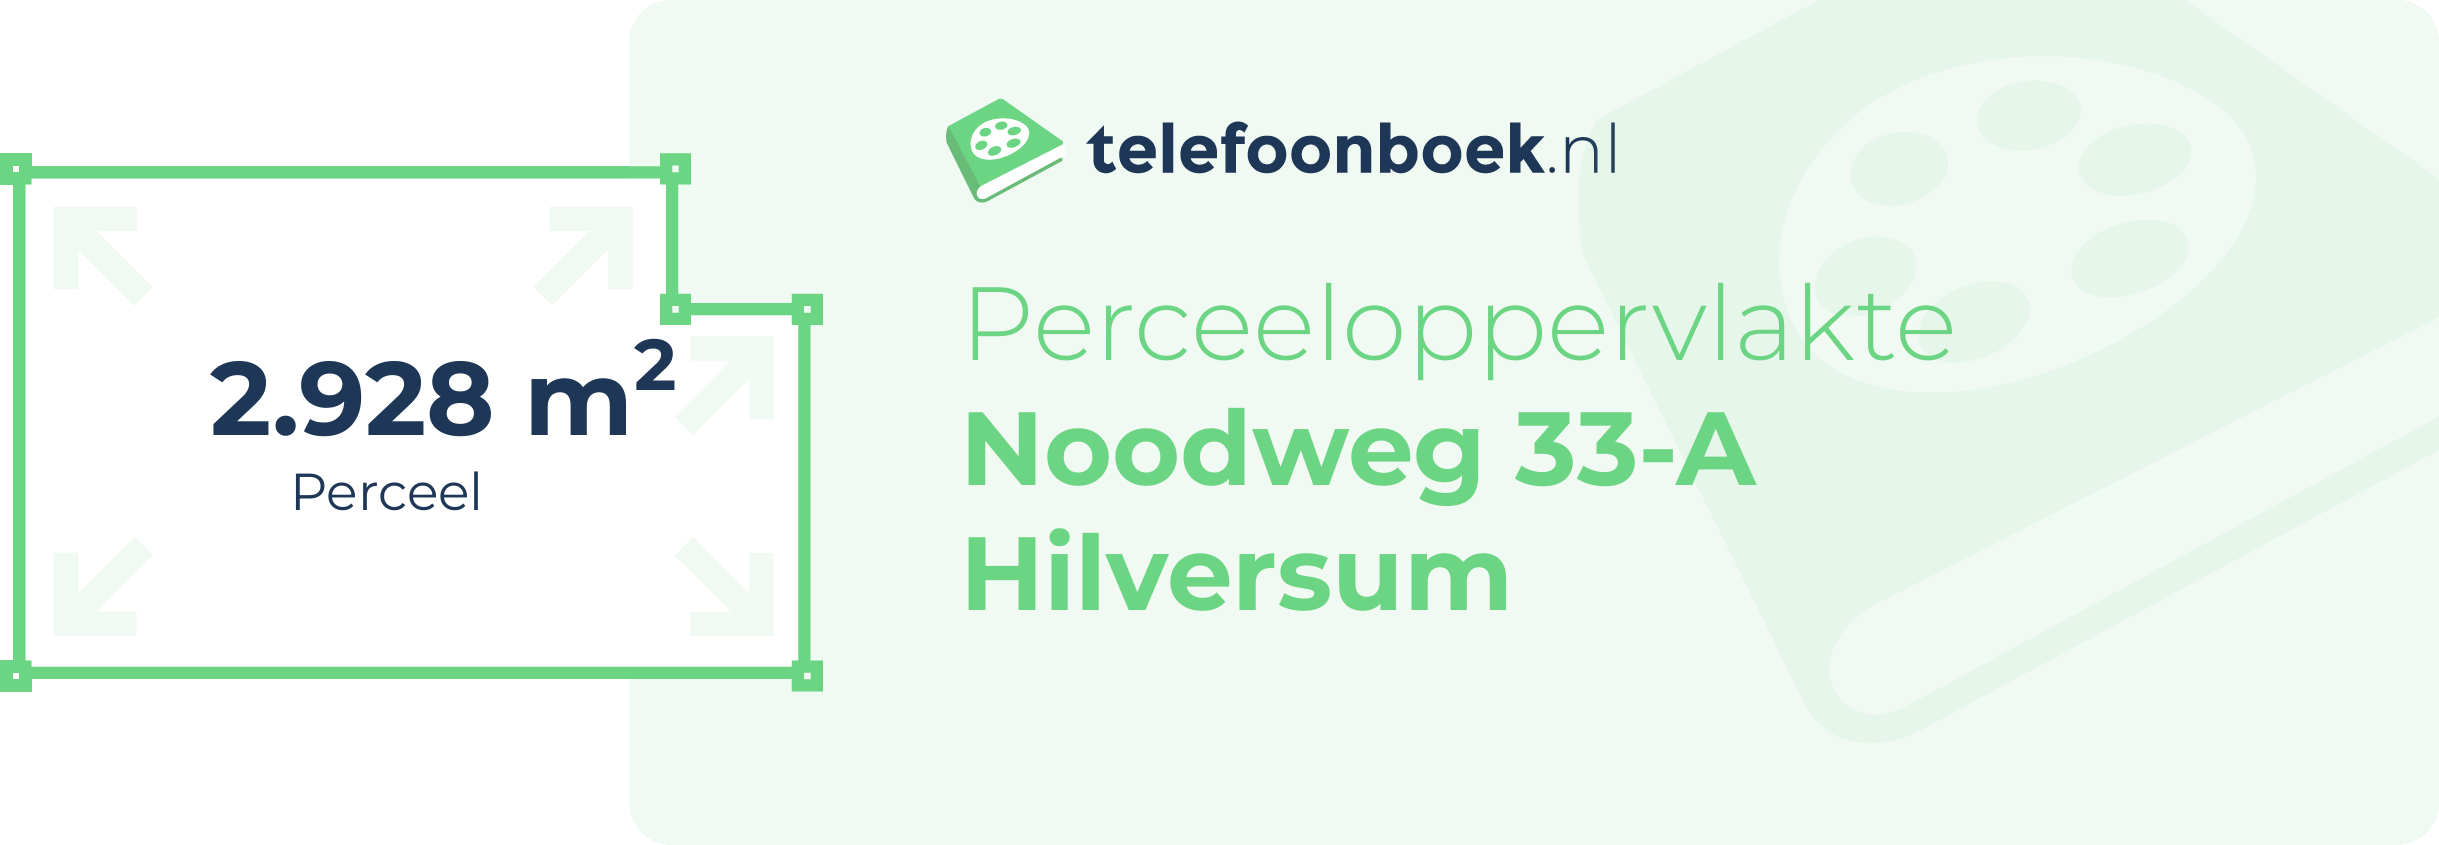 Perceeloppervlakte Noodweg 33-A Hilversum